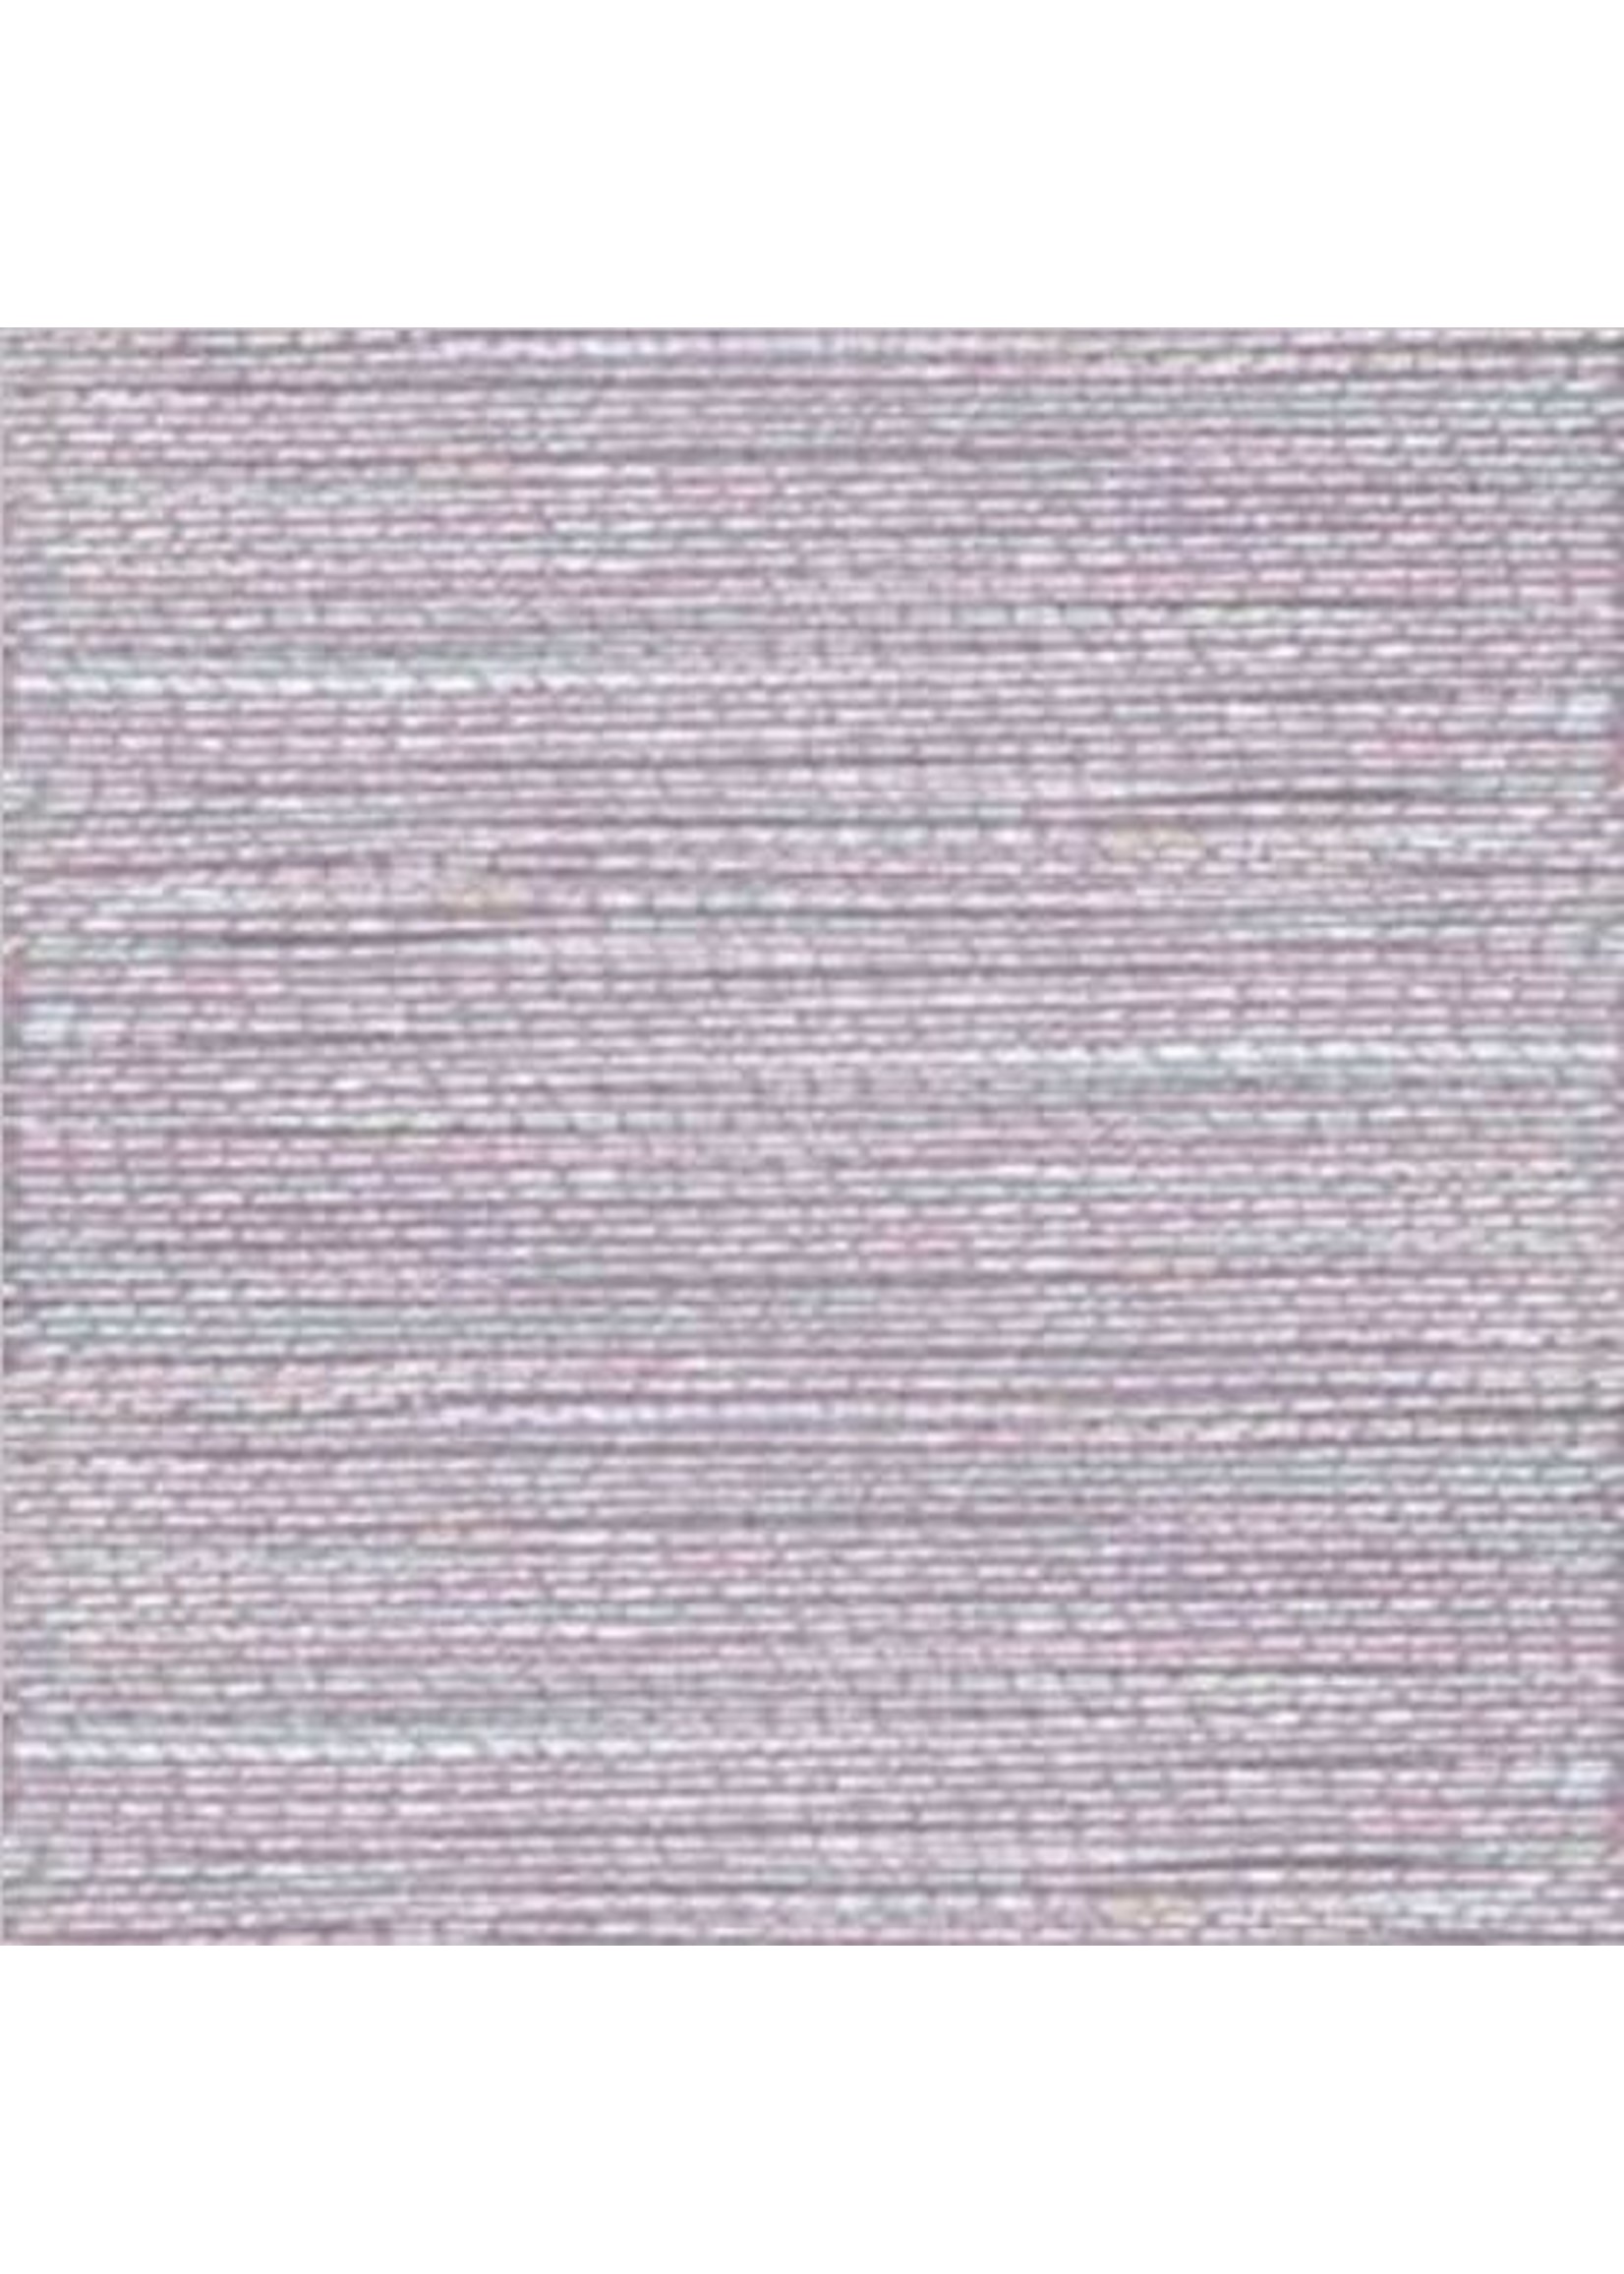 Yenmet Yenmet Pearlessence Light Purple 7031 (AN5)